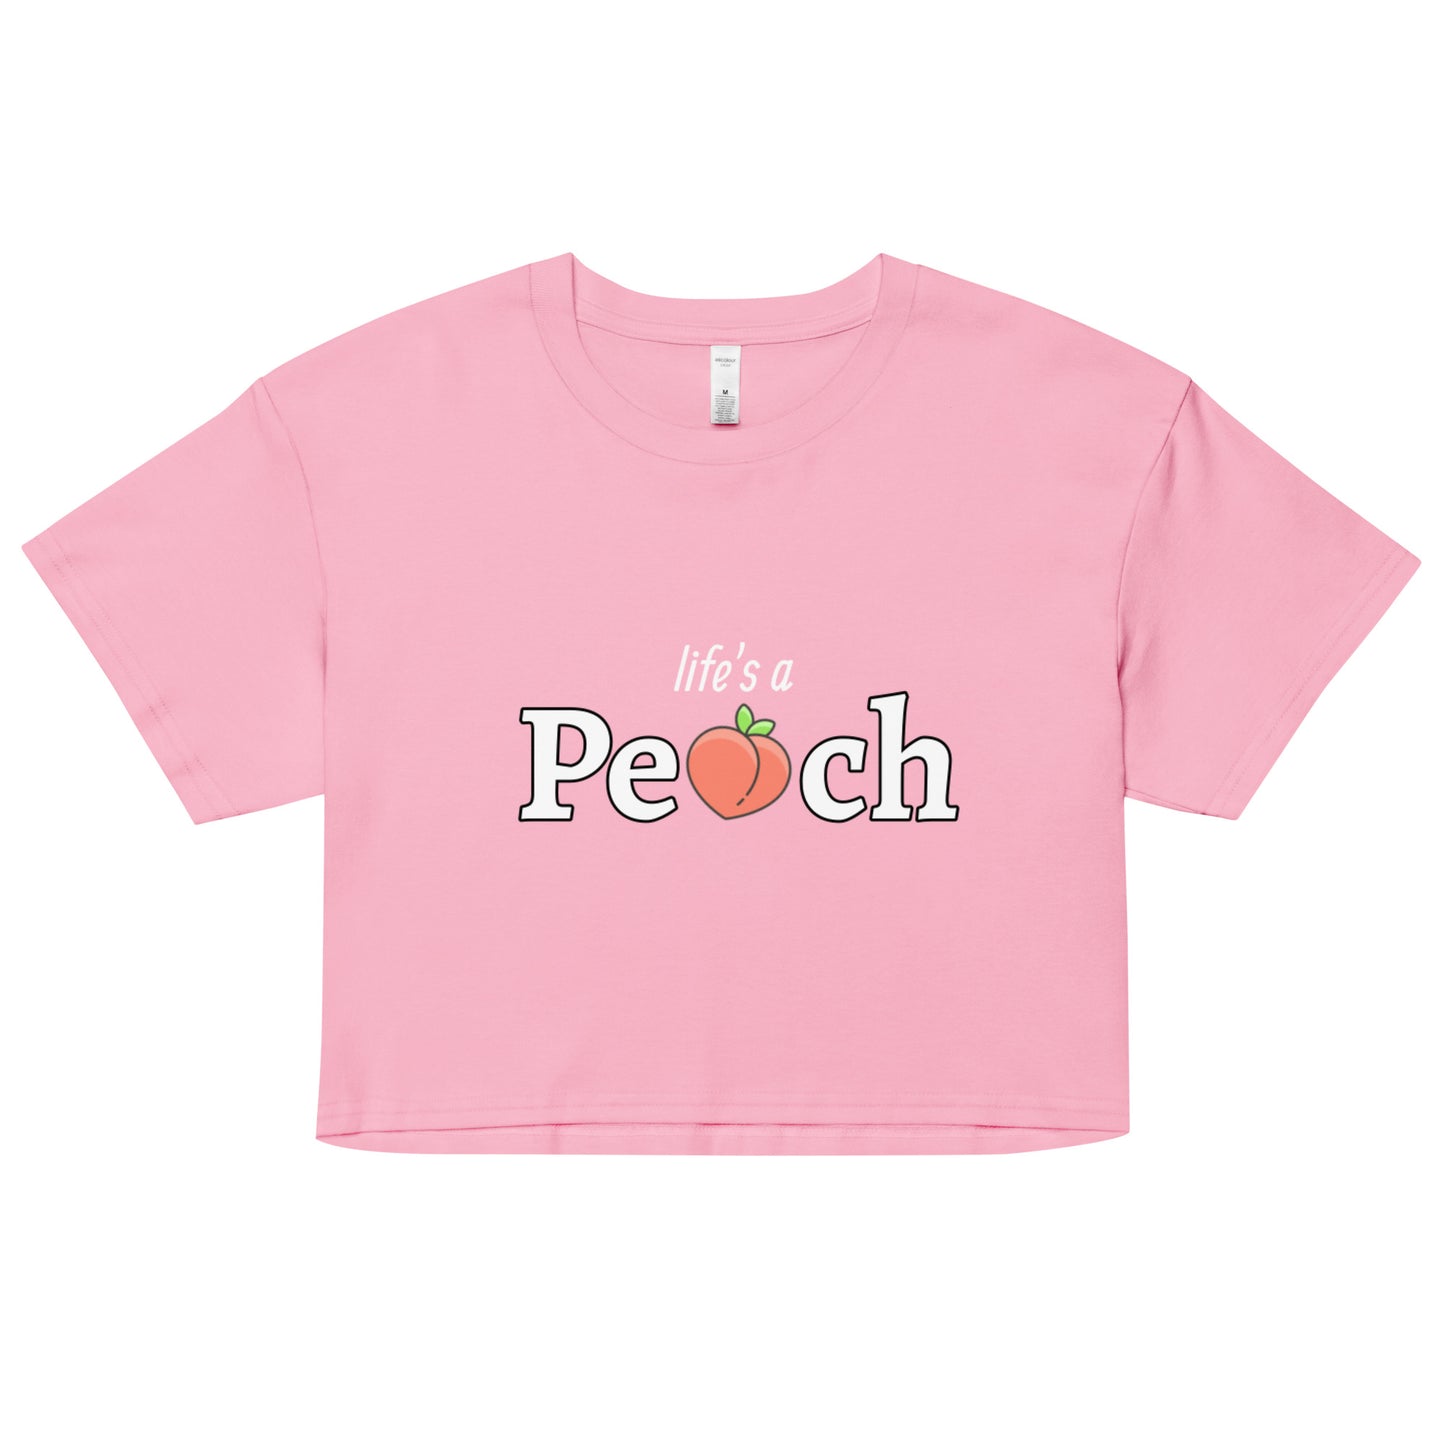 Life's a Peach Women’s crop top